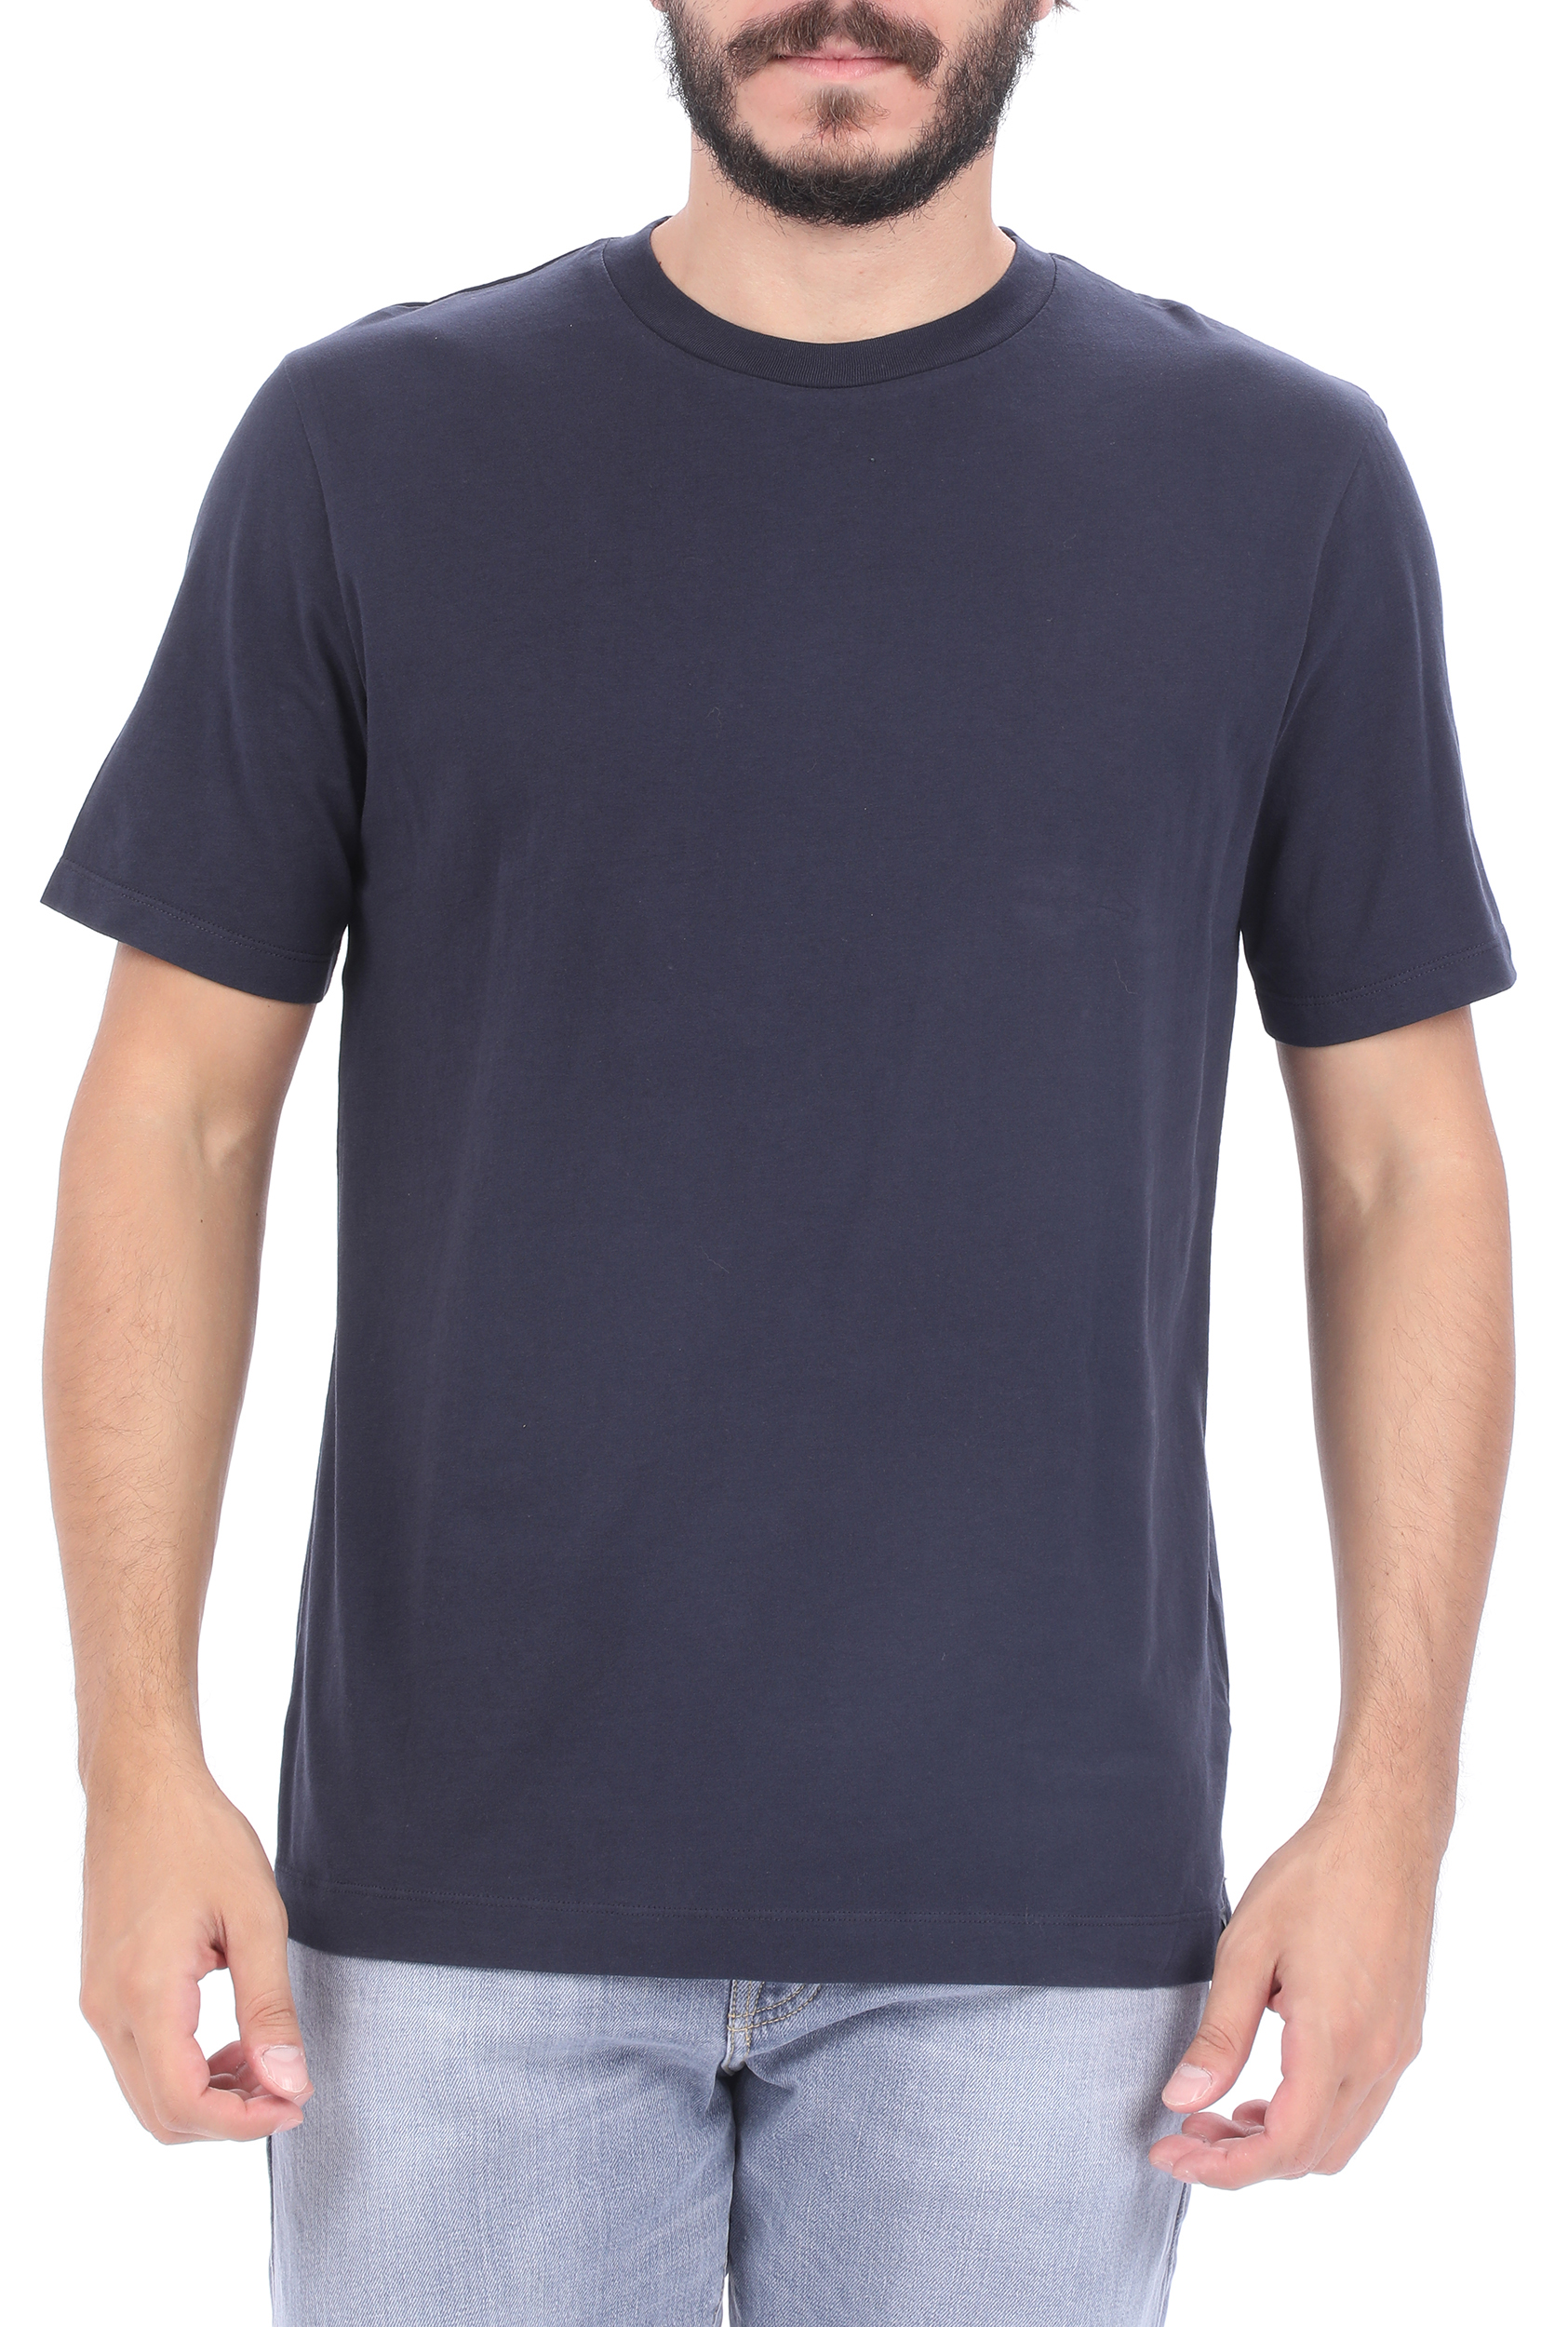 Ανδρικά/Ρούχα/Μπλούζες/Κοντομάνικες SCOTCH & SODA - Ανδρικό t-shirt SCOTCH & SODA Classic solid organic cotton μπλε